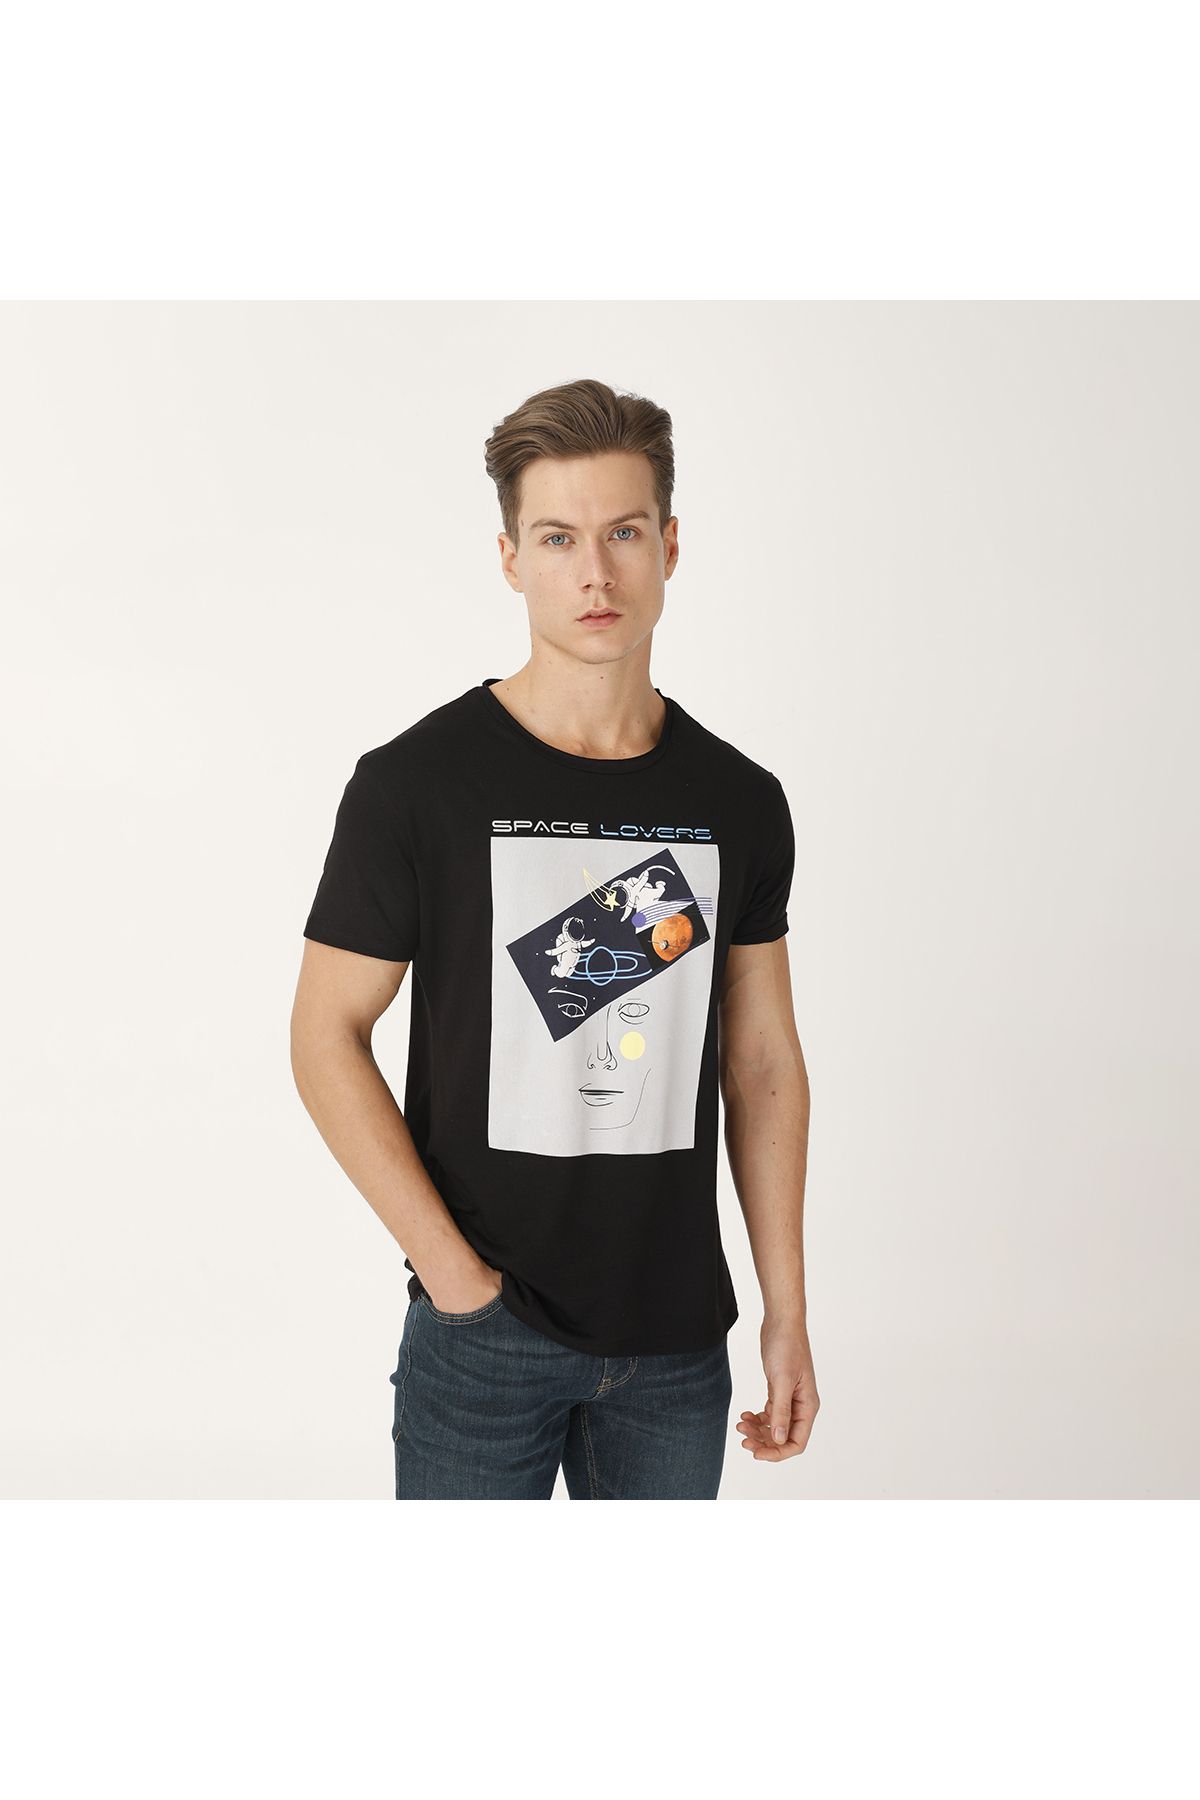 Biggdesign Erkek Siyah Faces Space Lovers T-shirt